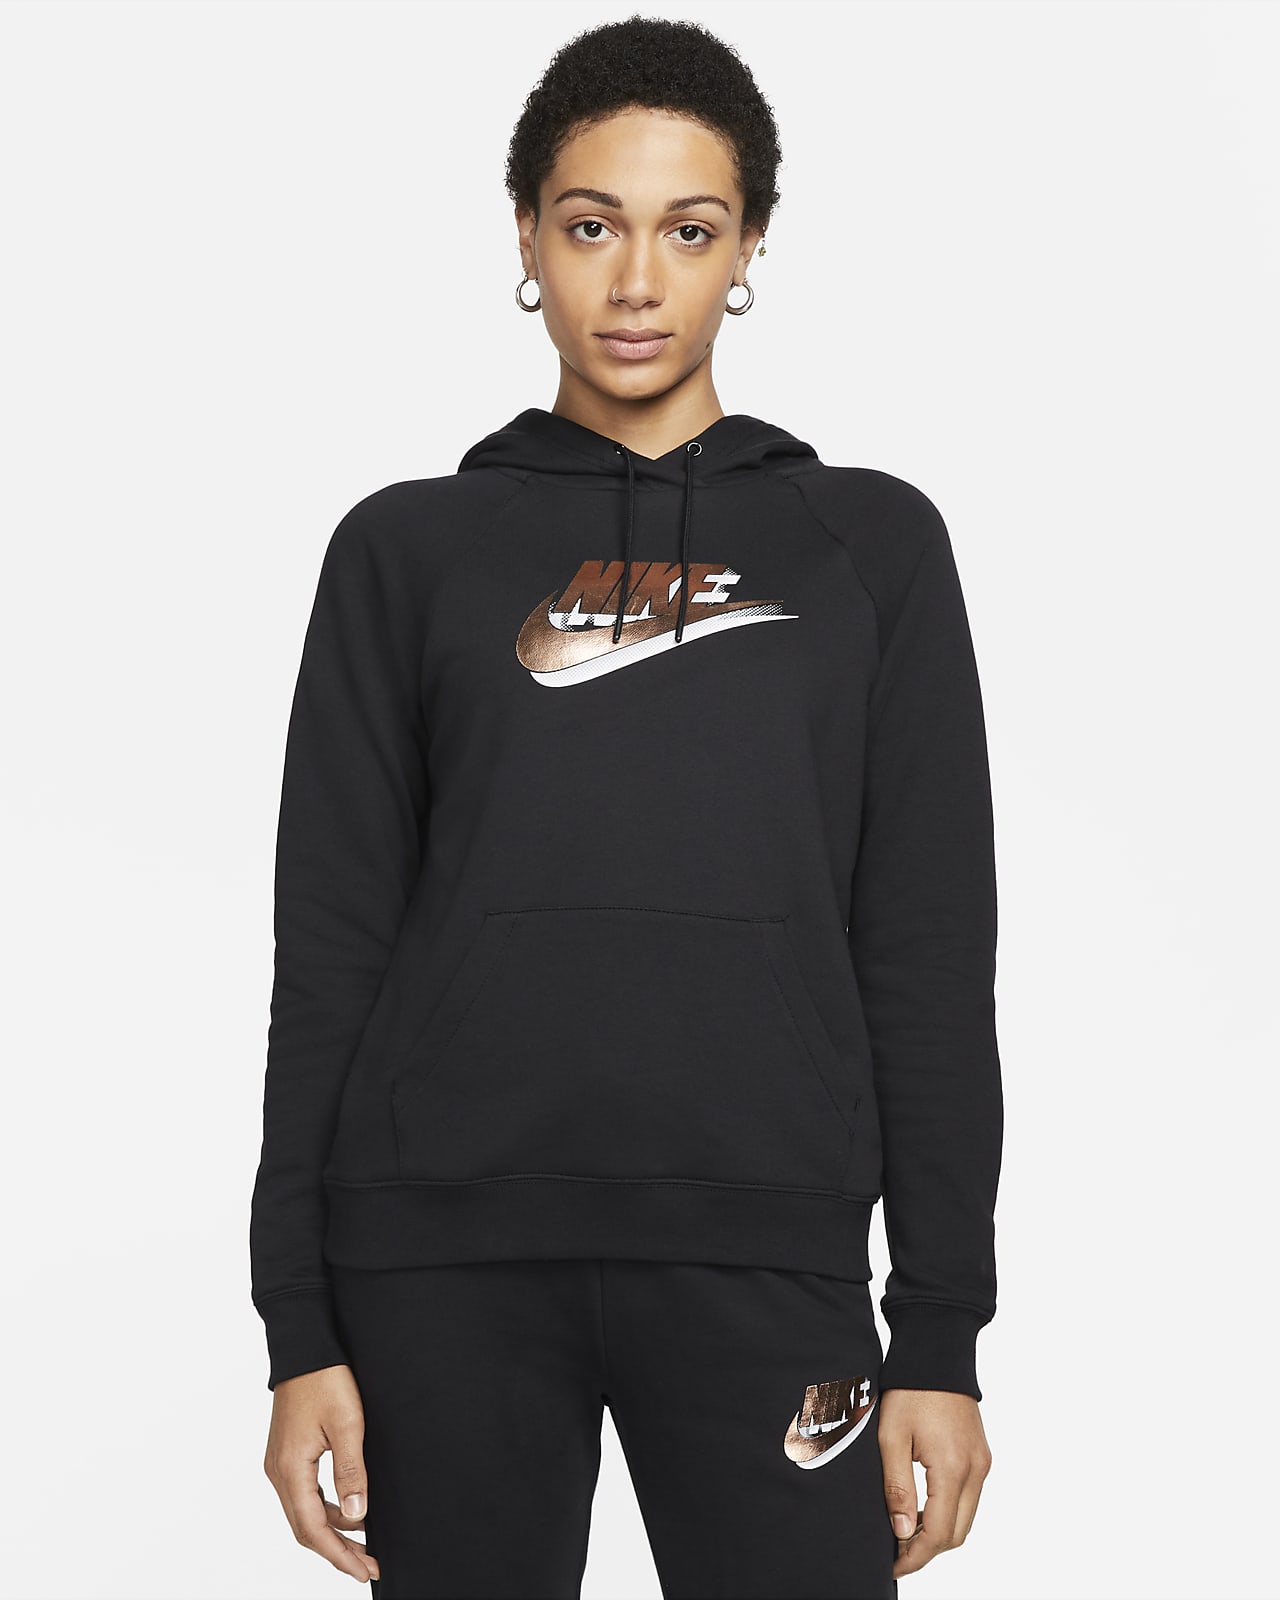 Felpa pullover con cappuccio e stampa Nike Sportswear - Donna